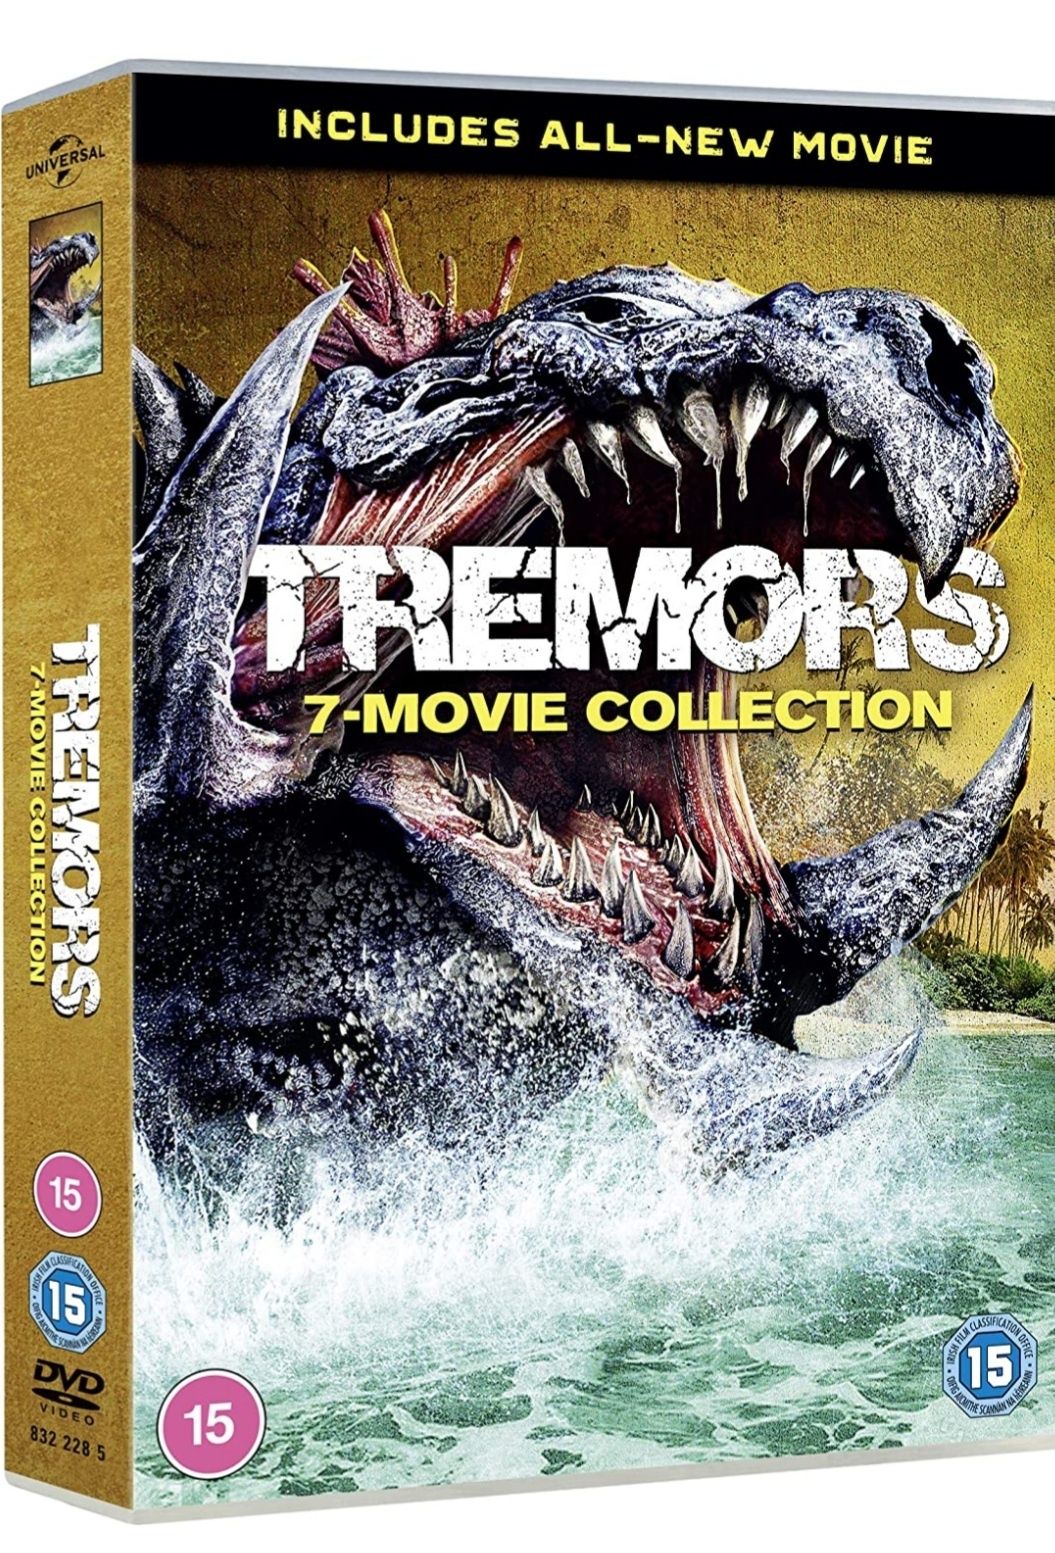 Filme DVD Tremors 1-7 BoxSet Complete Collection ( Originale )